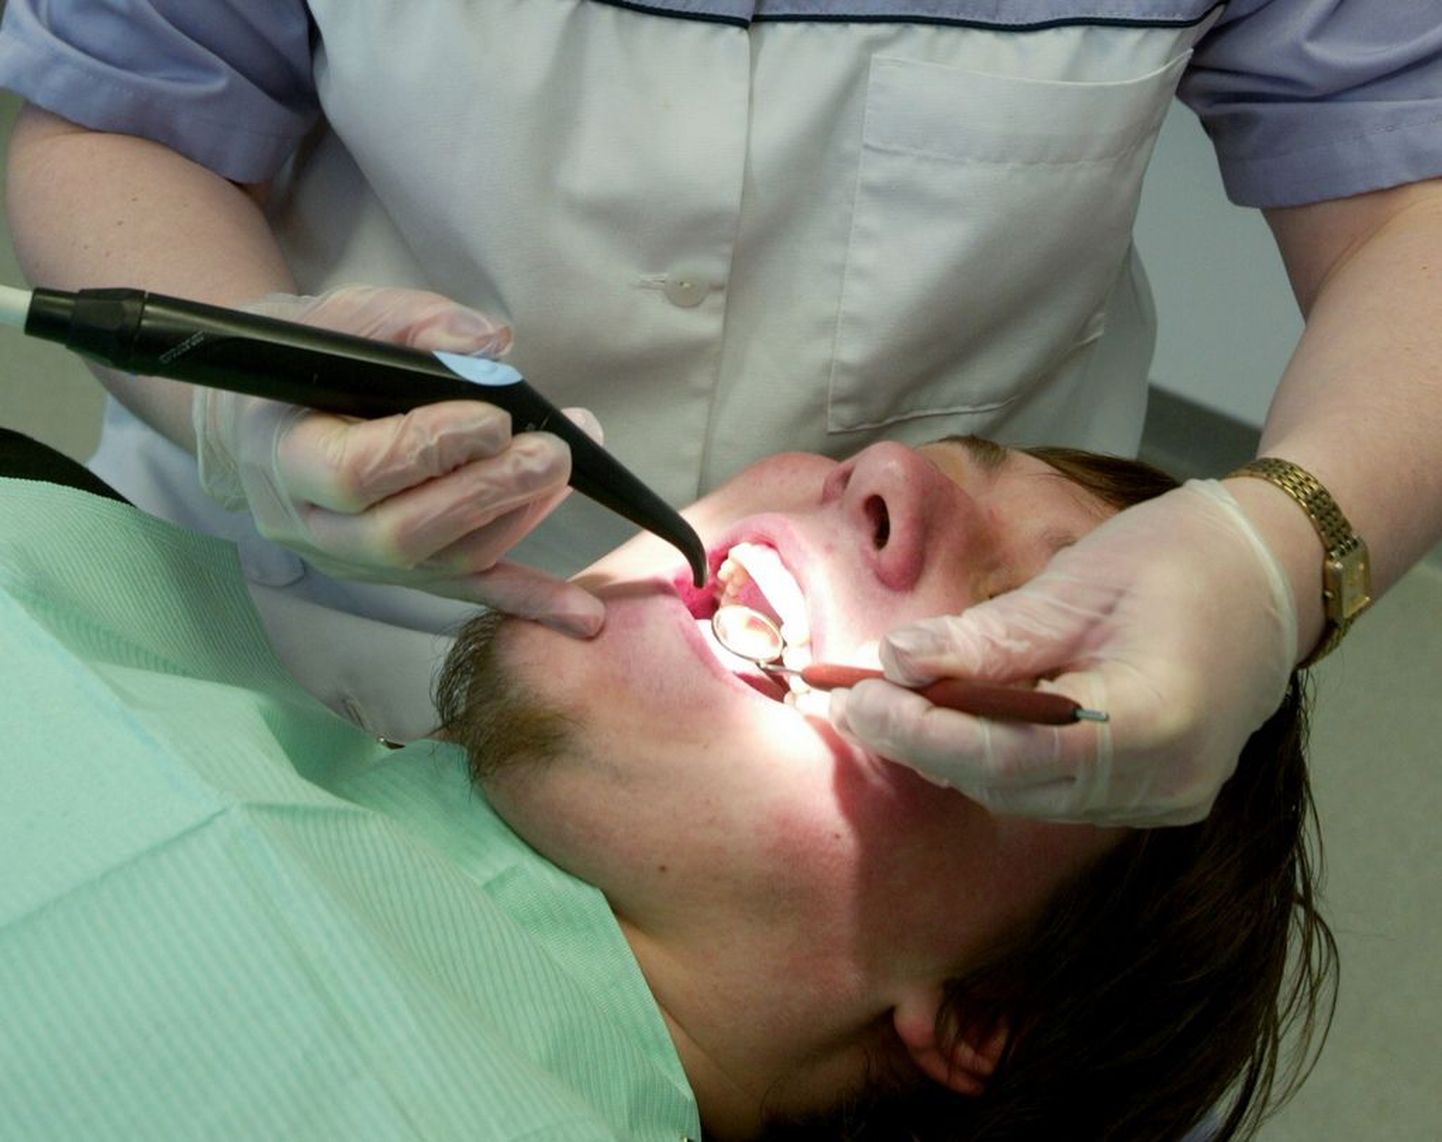 Kurgumandlid ja hambajuure alused peavad psoriaasihaigel olema kindlasti saneeritud, kuna streptokokk-infektsioonid tõstavad psoriaatilise artriidi tekkimise riski.